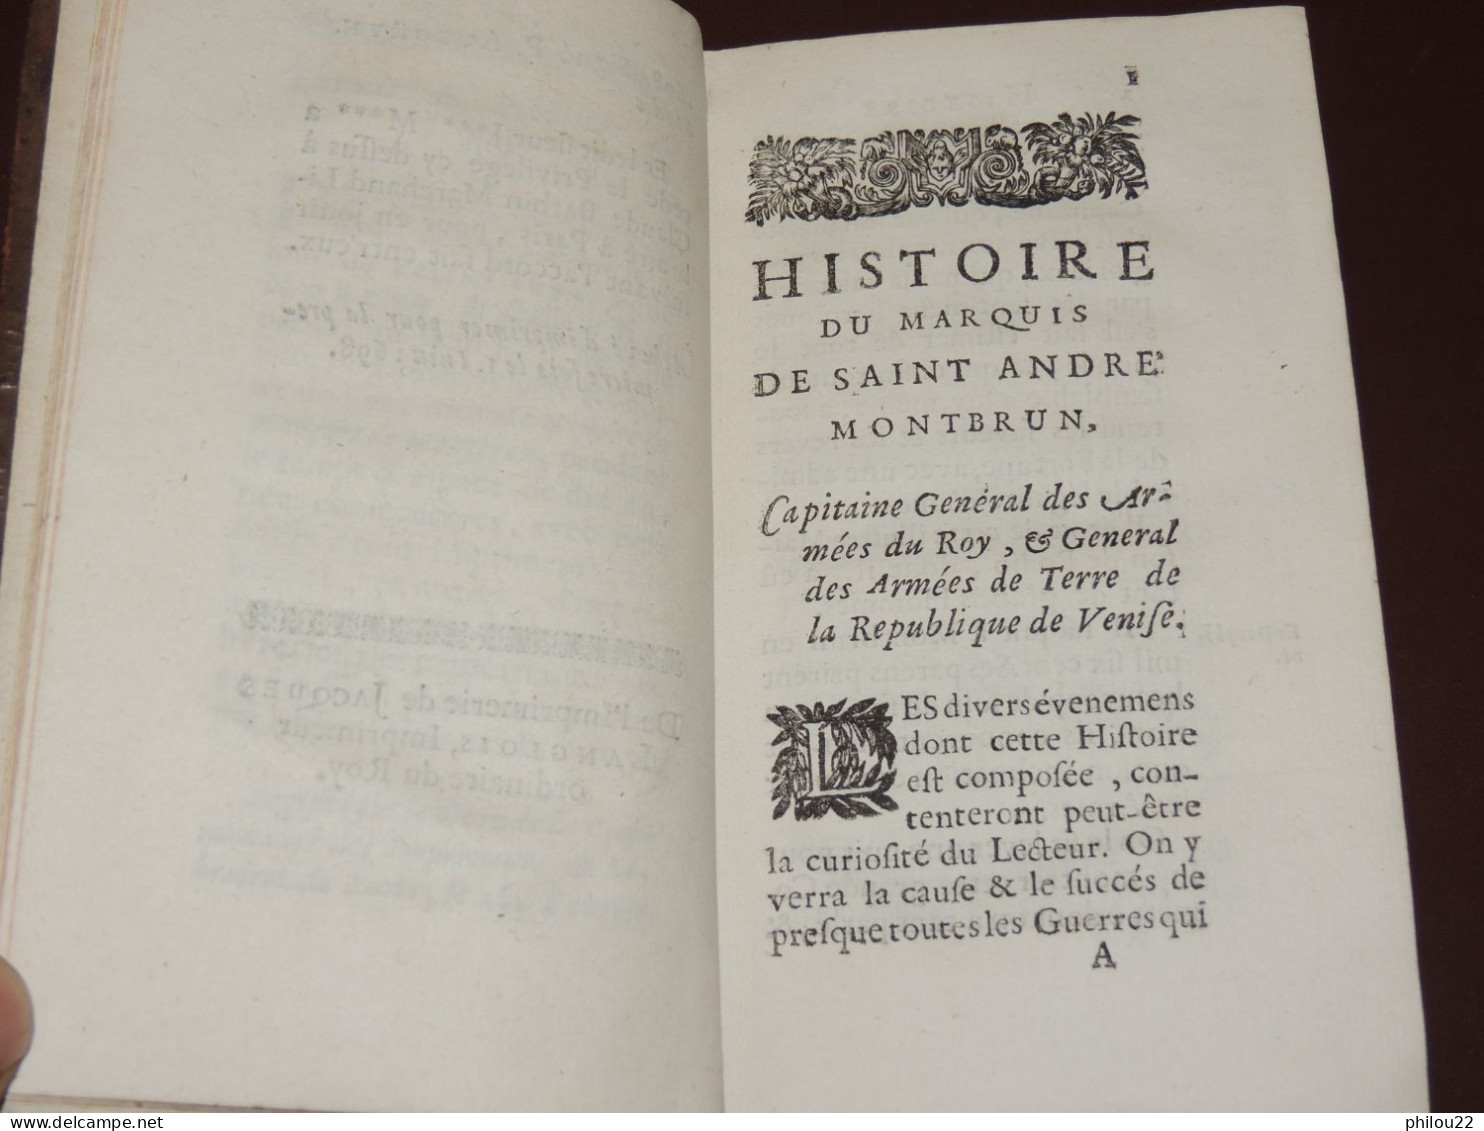 [Dom Joseph MERVESIN] - Histoire du marquis de Saint-André Montbrun - E.O. 1698